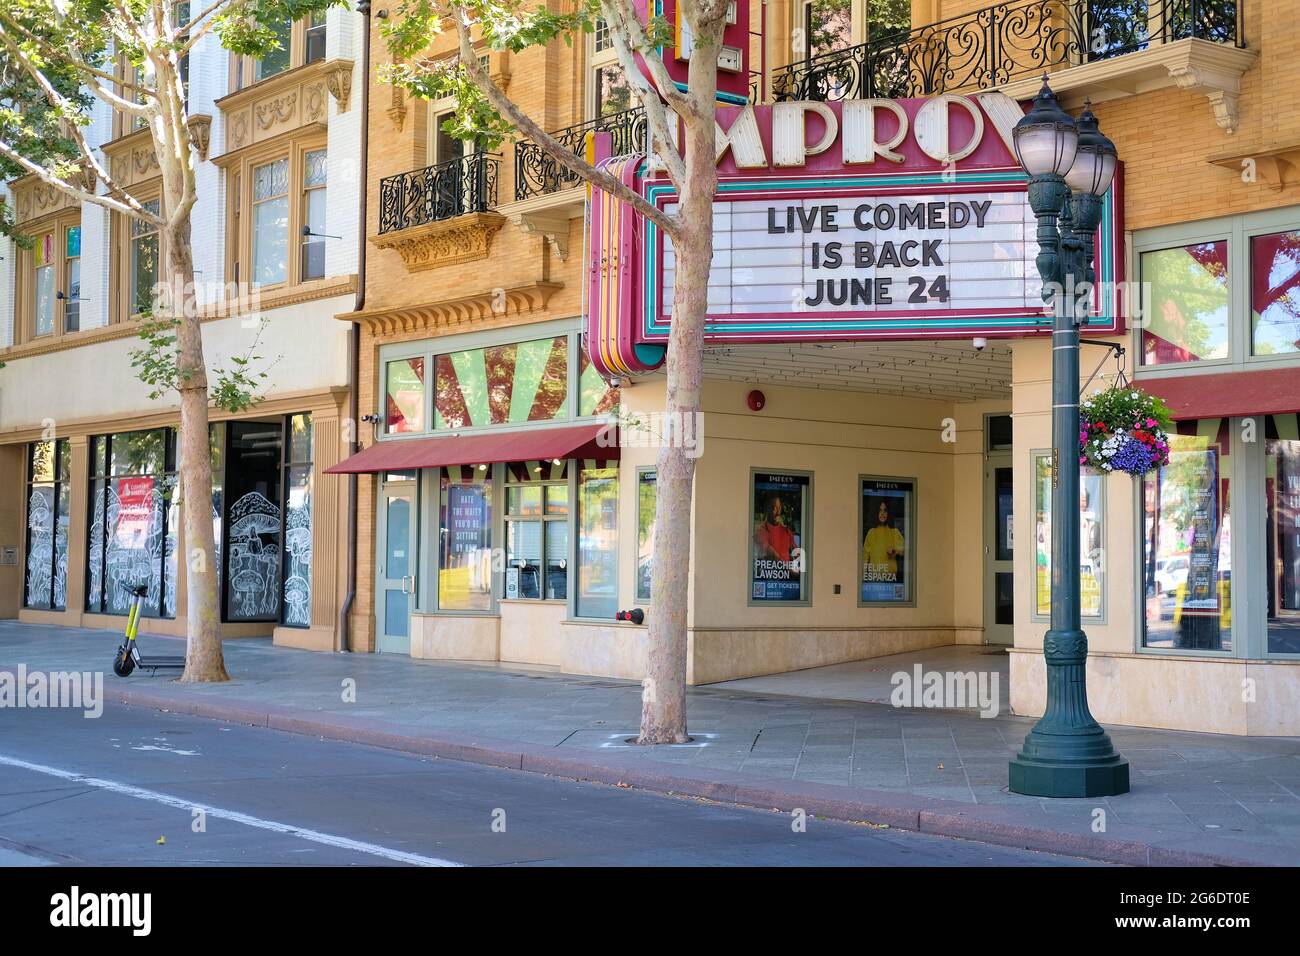 La marquesina del Club de Comedia San José Improv en el centro de San José, California, anunciando su reapertura después del cierre de refugio pandémico Covid-19. Foto de stock